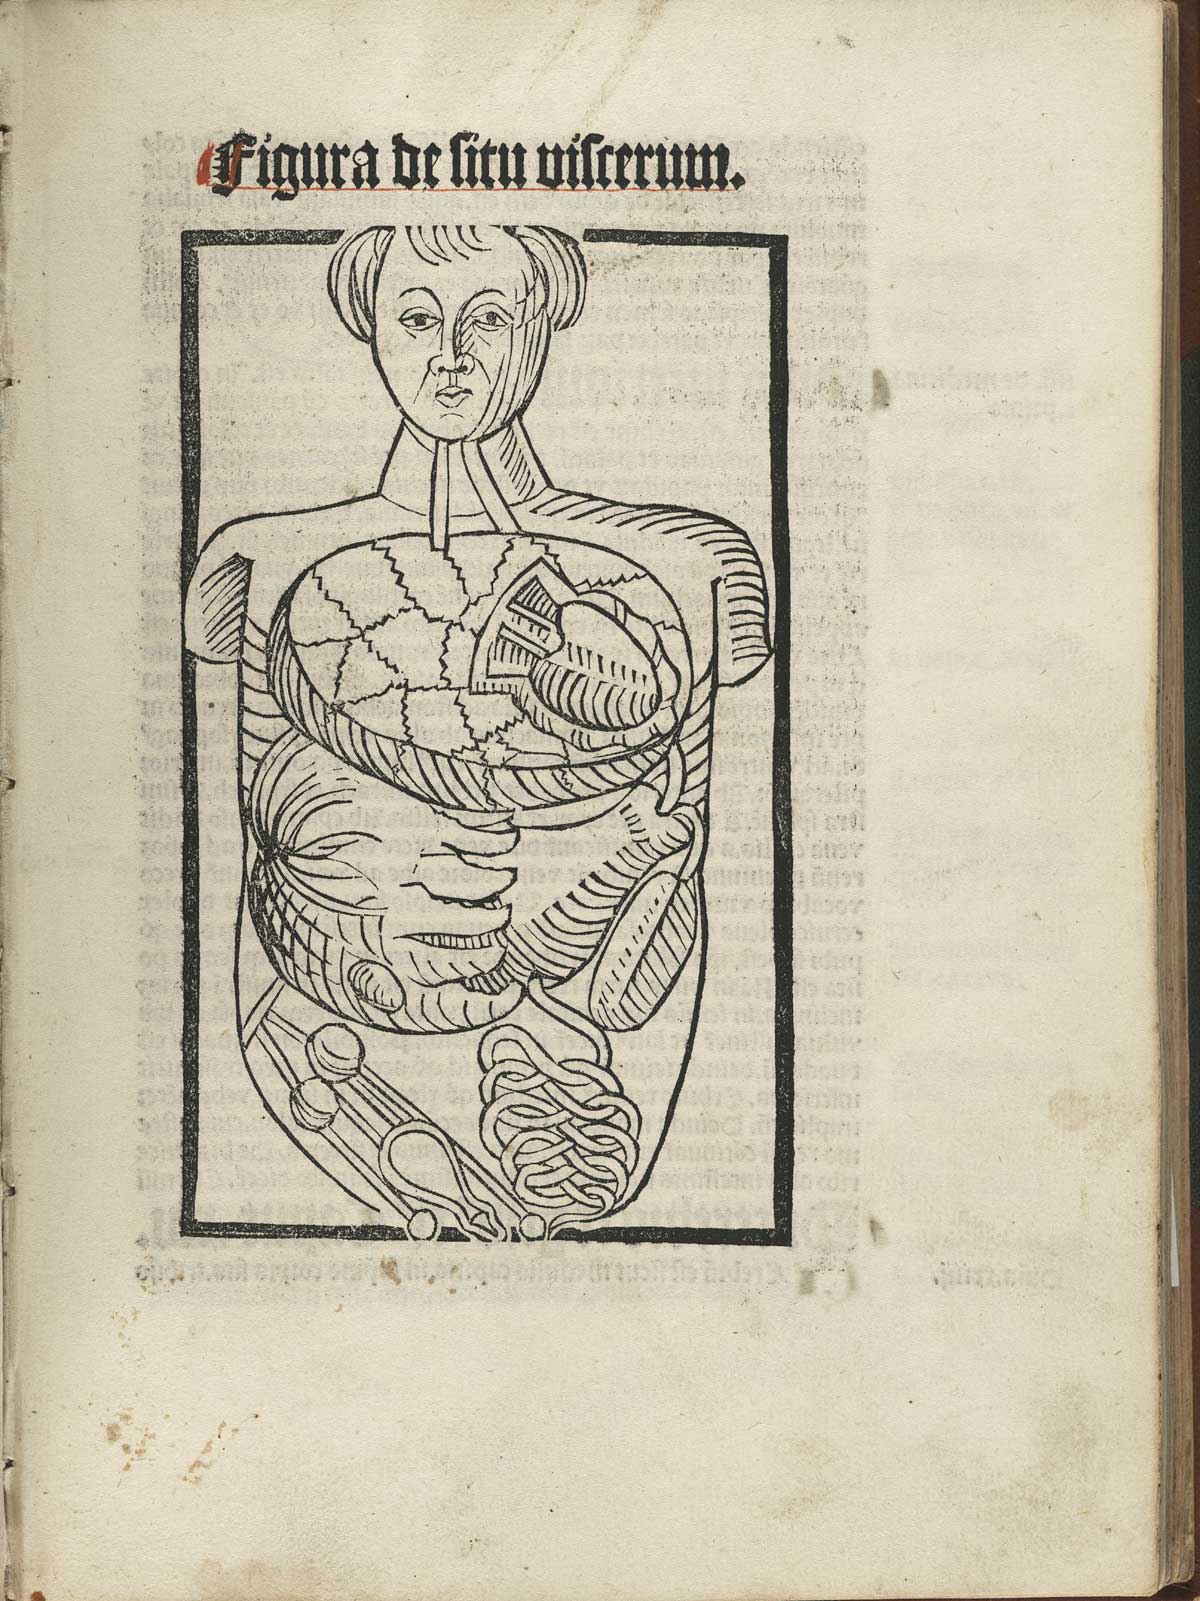 Page 119 of Magnus Hundt's Antropologium de hominis dignitate, natura et proprietatibus, de elementis, partibus et membris humani corporis, featuring a figure indicating the body organs.